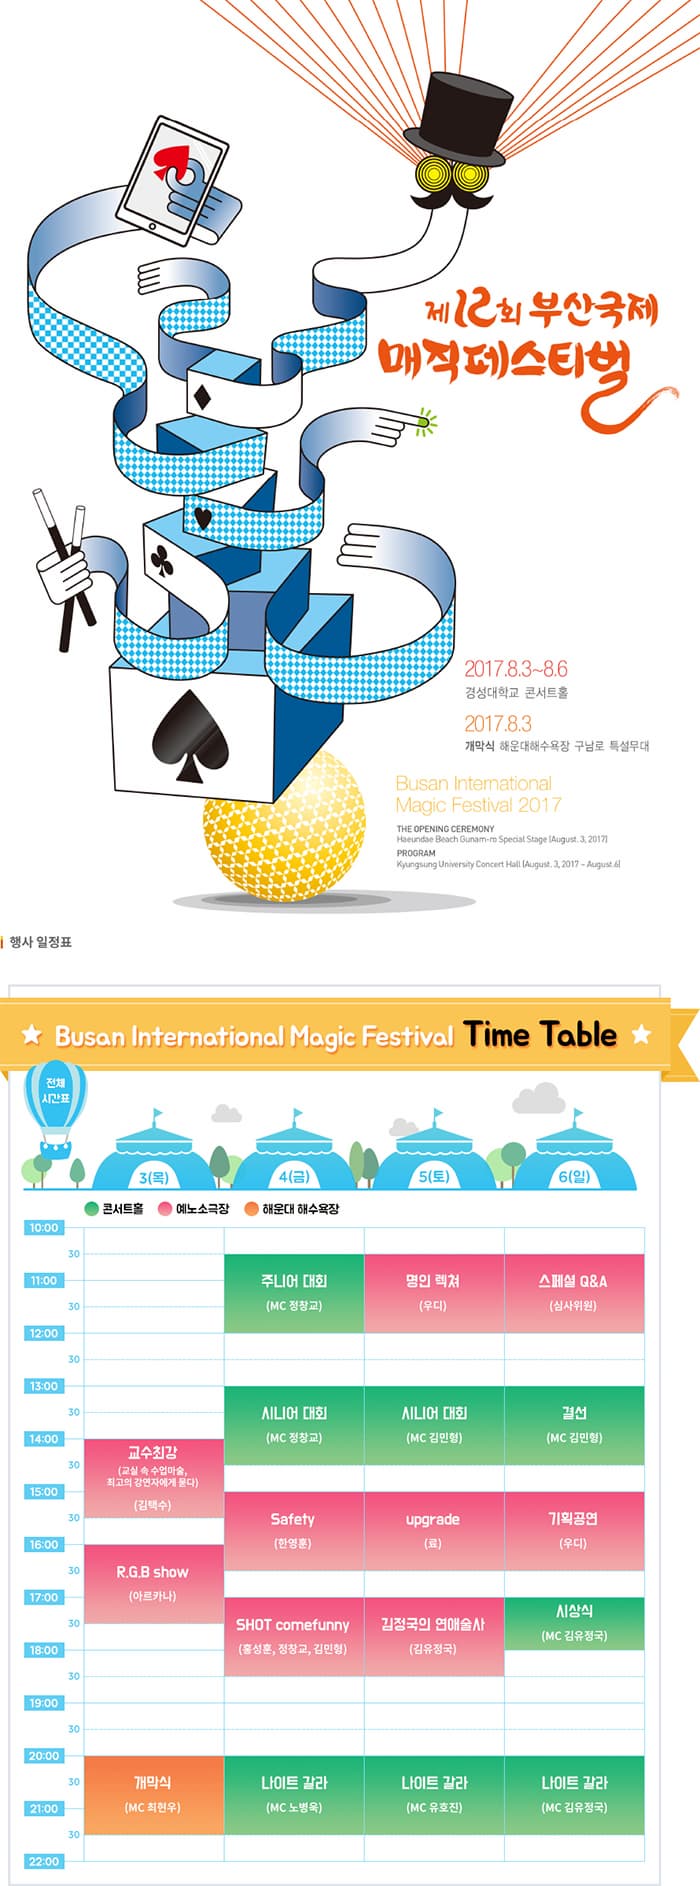 제 12회 부산국제 매직페스티벌 / 2017.8.3~8.6 /경성대학교 콘서트홀/ 2017.8.3 개막식 해운대해수욕장 구남로 특설무대/ Busan International/ Magic Festival 2017 / 행사 일정표/ Busan International Magic Festival Time Table/ 전체 시간표/ 3(목) 14시 교수최강 (교실 속 수업마술, 최고의 강연자에게 묻다) (김택수)/ 16시~ 17시30분 R.G.B show (아르카나)/ 20시~21시 30분 개막식 (MC 최현우)/ 4(금) / 10시 30분 ~ 12시 주니어 대회 (MC 전창교) / 13시 ~ 14시 30분 (MC 정창교) / 15시 ~16시 Safety (한영훈) / SHOT comefunny (홍성훈, 정창교, 김민형) / 20시~ 21시 30분 나이트 갈라 (MC 노병욱) / 5(토) 10시 30분 ~12시 명인 렉쳐 (우디) / 13시 ~ 14시 30분 시니어 대회 (MC 김민형)/ 15시 ~16시 30분 upgrade (료) /17시 ~18시 30분 김정국의 연애술사 (김유정국)/ 20시 ~ 21시 30분 나이트갈라 (MC 유호진)/ 6(일) / 10시 30분 ~12시 스페셜 Q엔A (심사위원) / 13시 ~ 14시 30분 결선 (MC 김민형)/ 15시 ~16시 30분 기획공연(우디) / 17시 ~18시 시상식 (MC 김유정국)/ 20시 ~21시 30분 나이트 가라 (MC 김유정국)